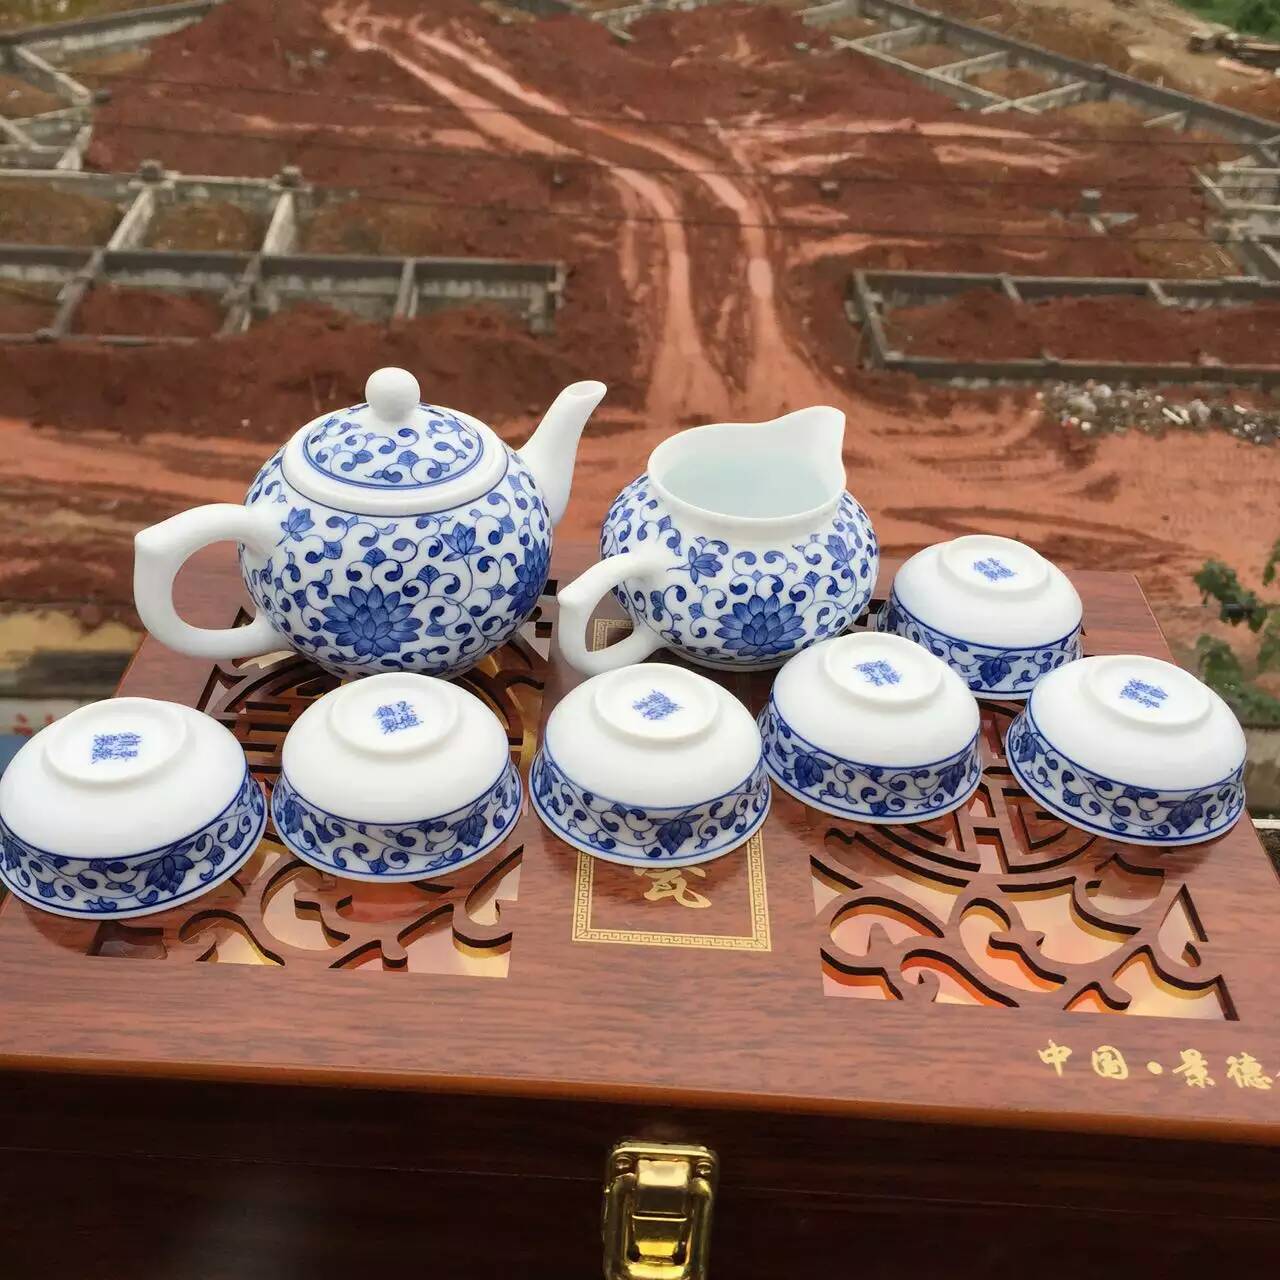 陶瓷茶具生产厂家景德镇辉龙陶瓷厂青花陶瓷茶具陶瓷功夫茶具  陶瓷茶具生产厂家